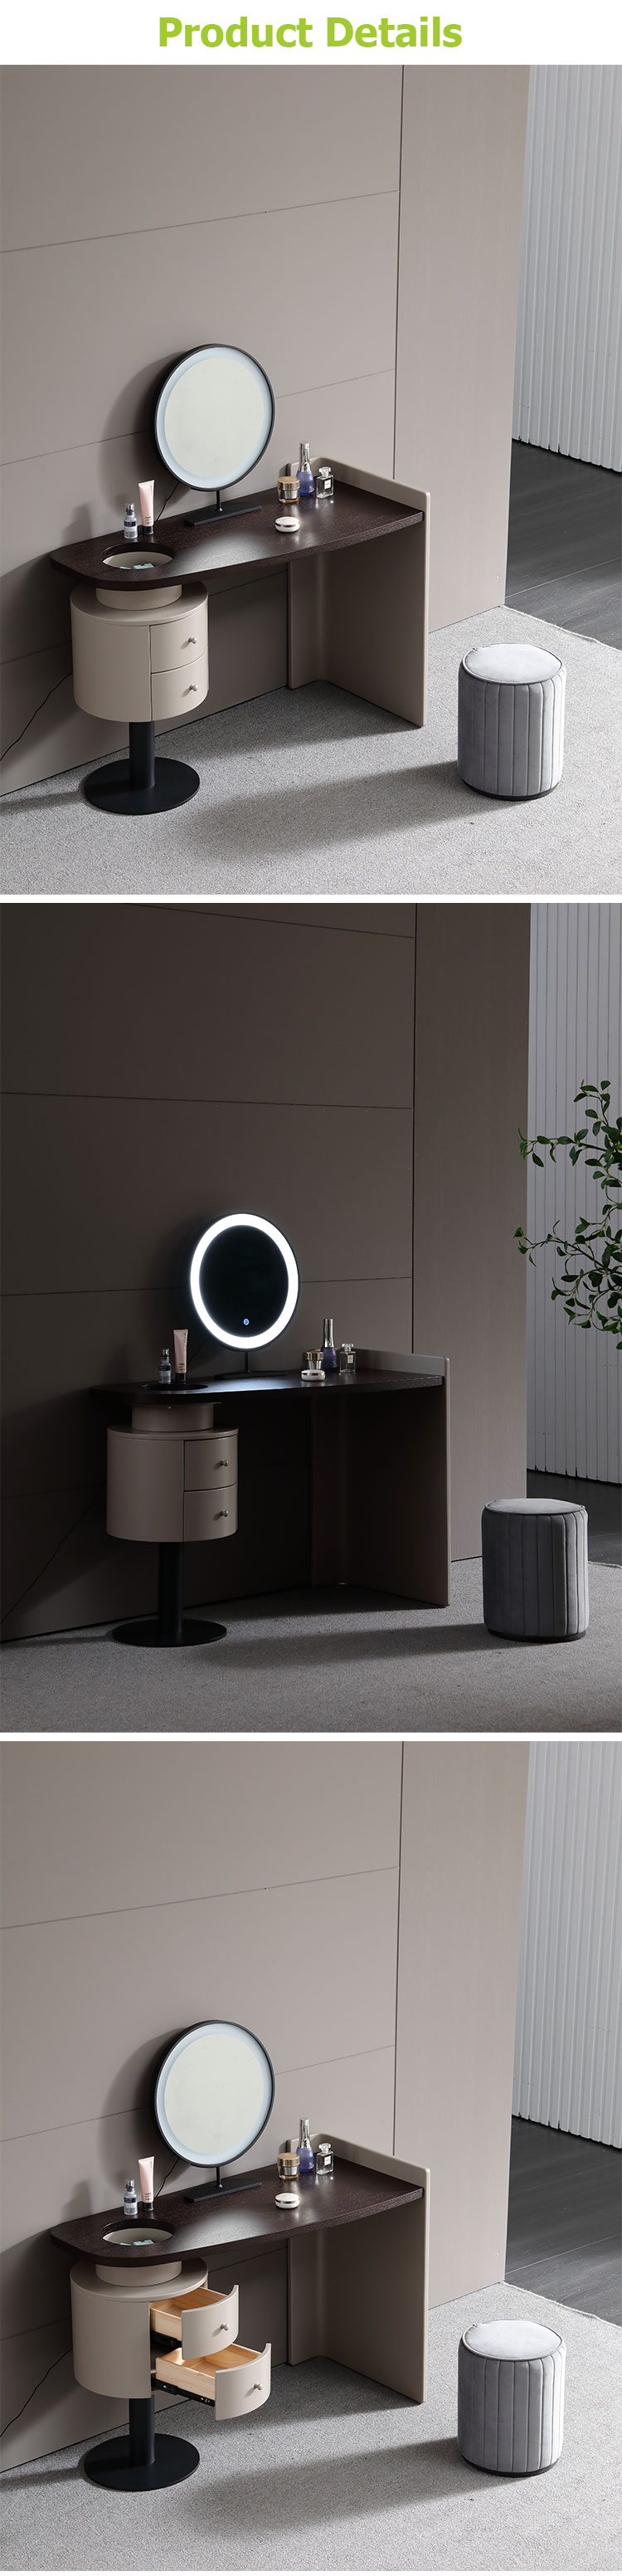 Tocador moderno de la vanidad de los muebles del dormitorio con el espejo